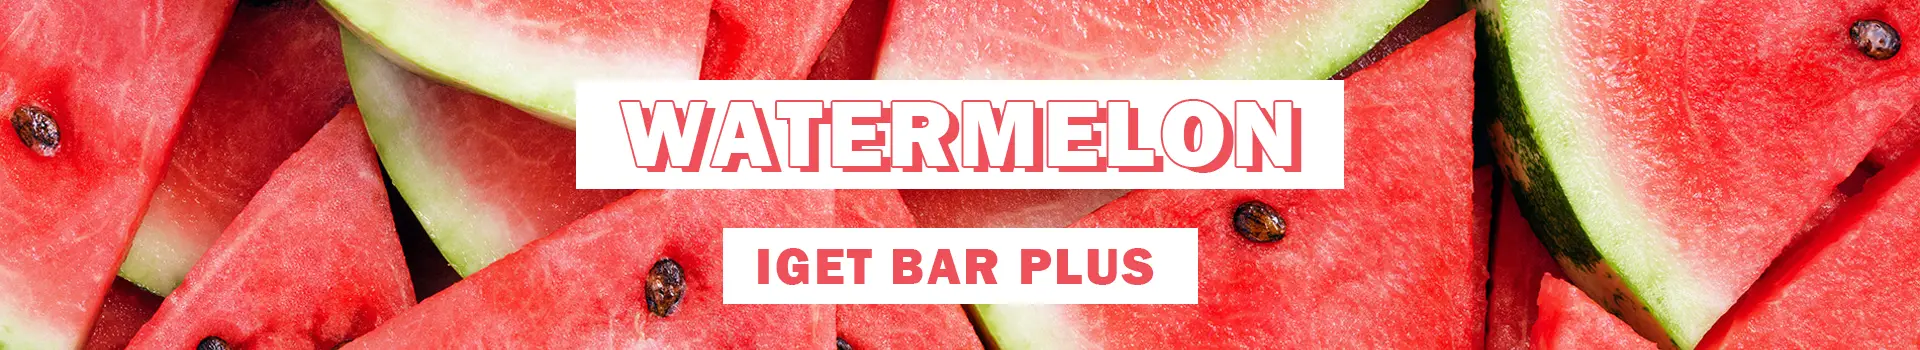 watermelon iget bar plus flavours